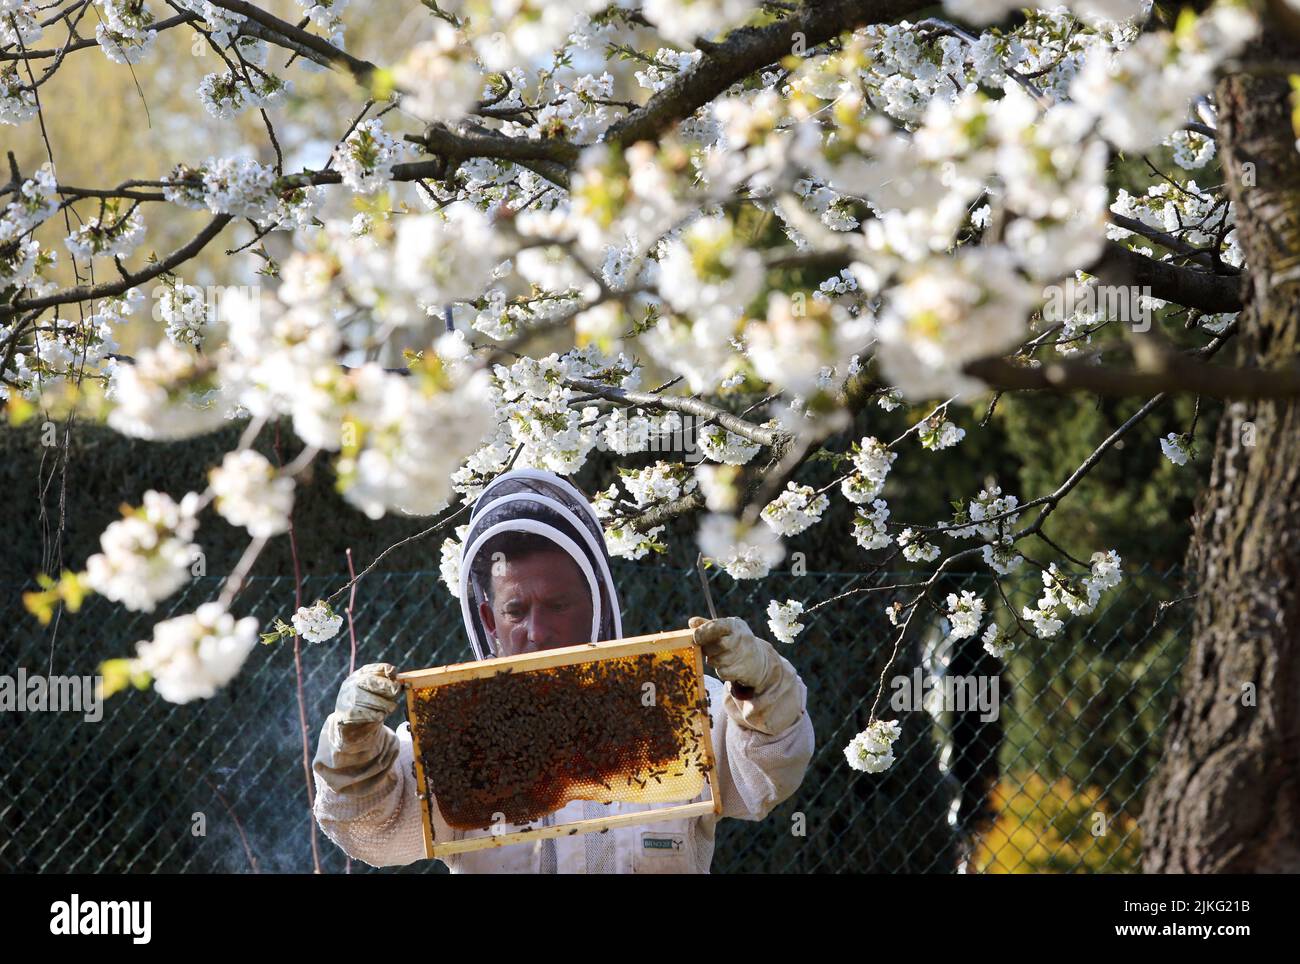 17.04.2022, Germania, Brandeburgo, Neuenhagen - Beekeeper che guarda sotto un ciliegio fiorente ad un nido d'ape della sua colonia di api. 00S220417D337CAROEX. Foto Stock